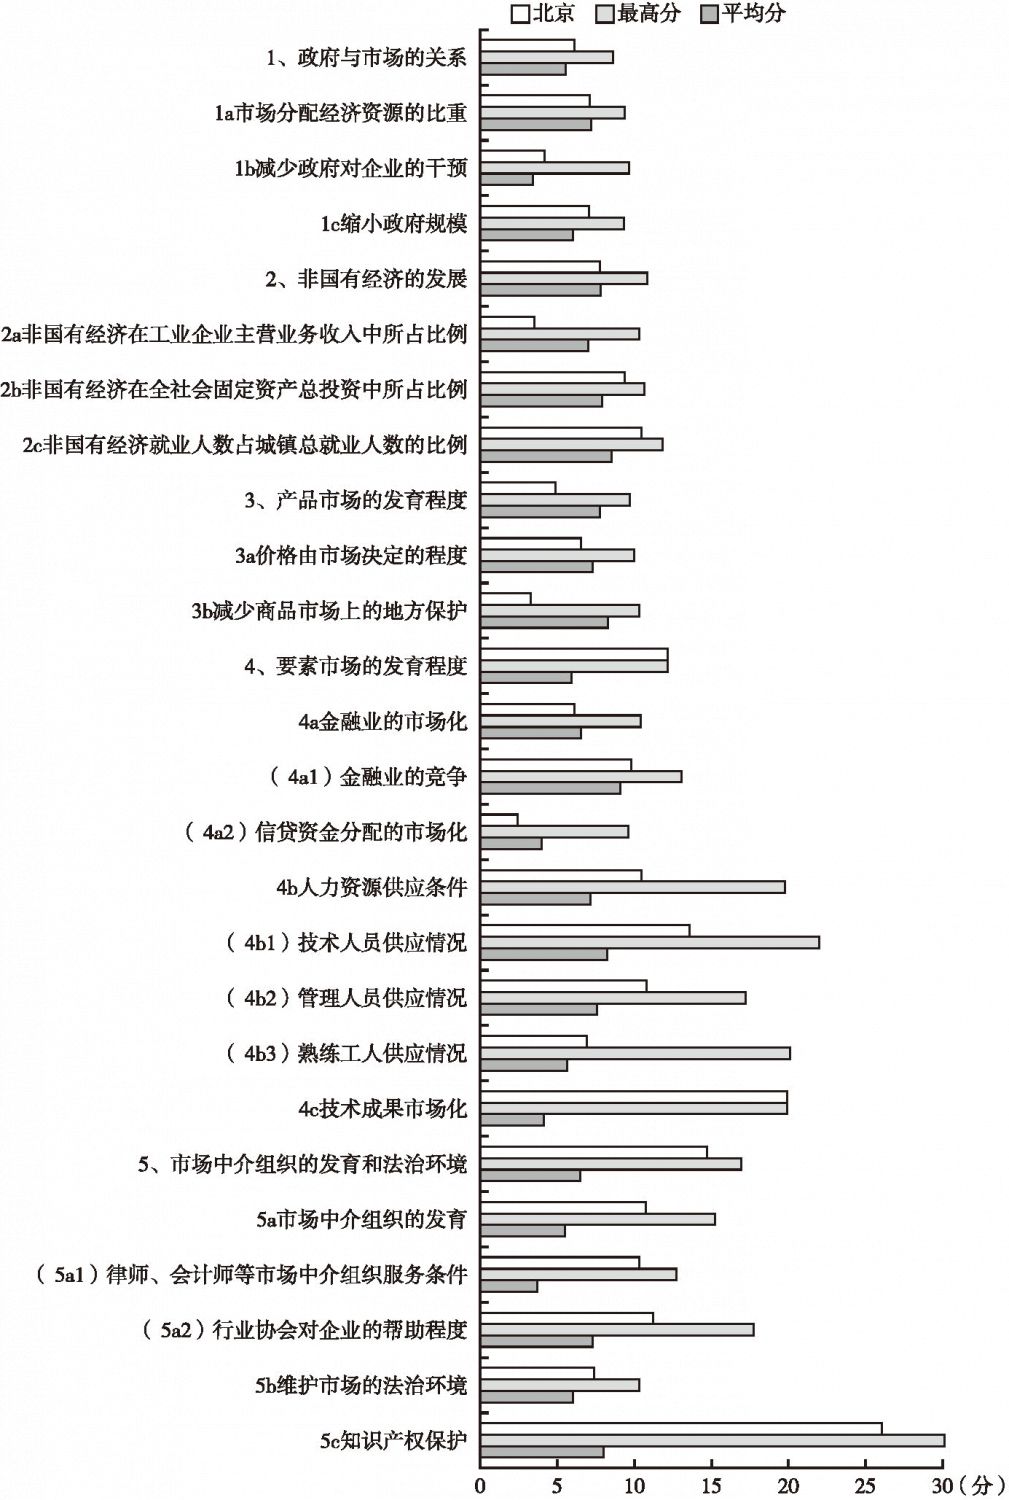 2016年北京市场化各方面指数和分项指数与全国最高分及平均分的比较